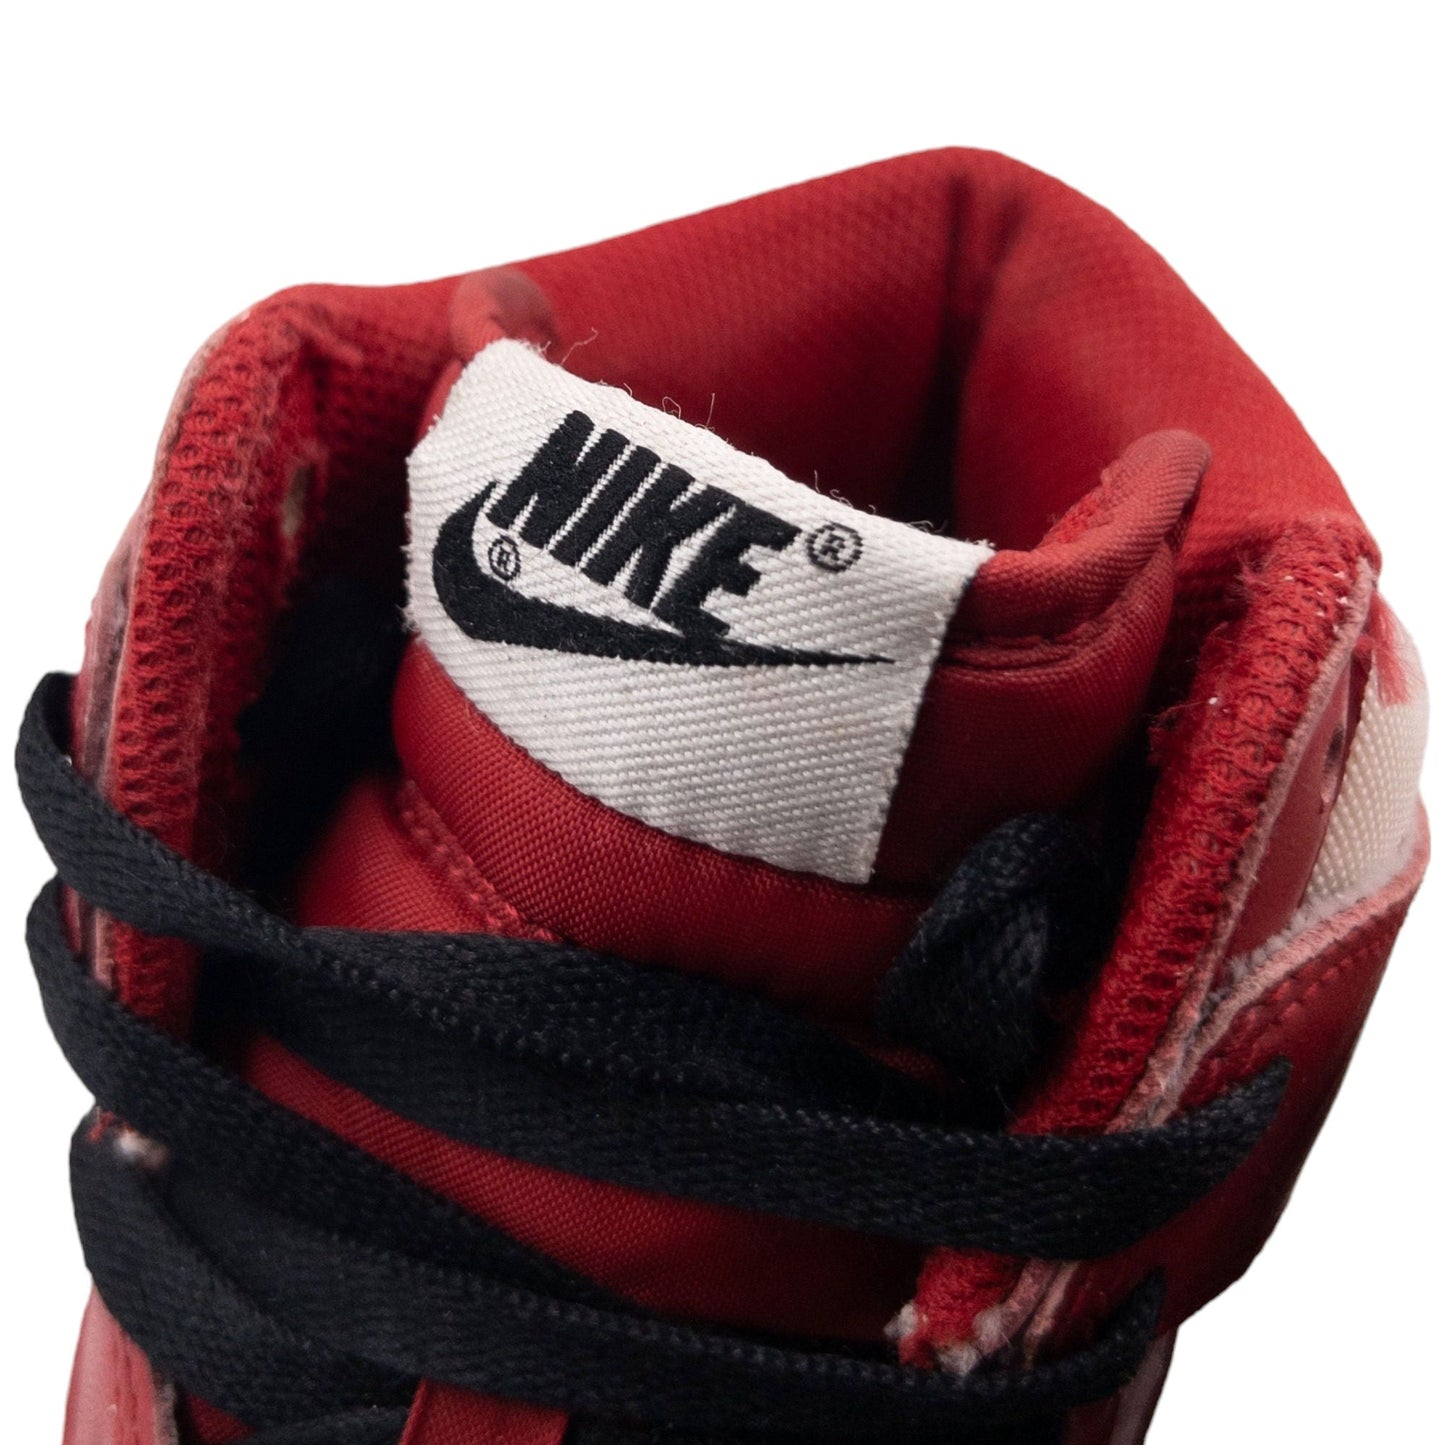 Vintage Nike AIR Jordan 1 High Size UK 9